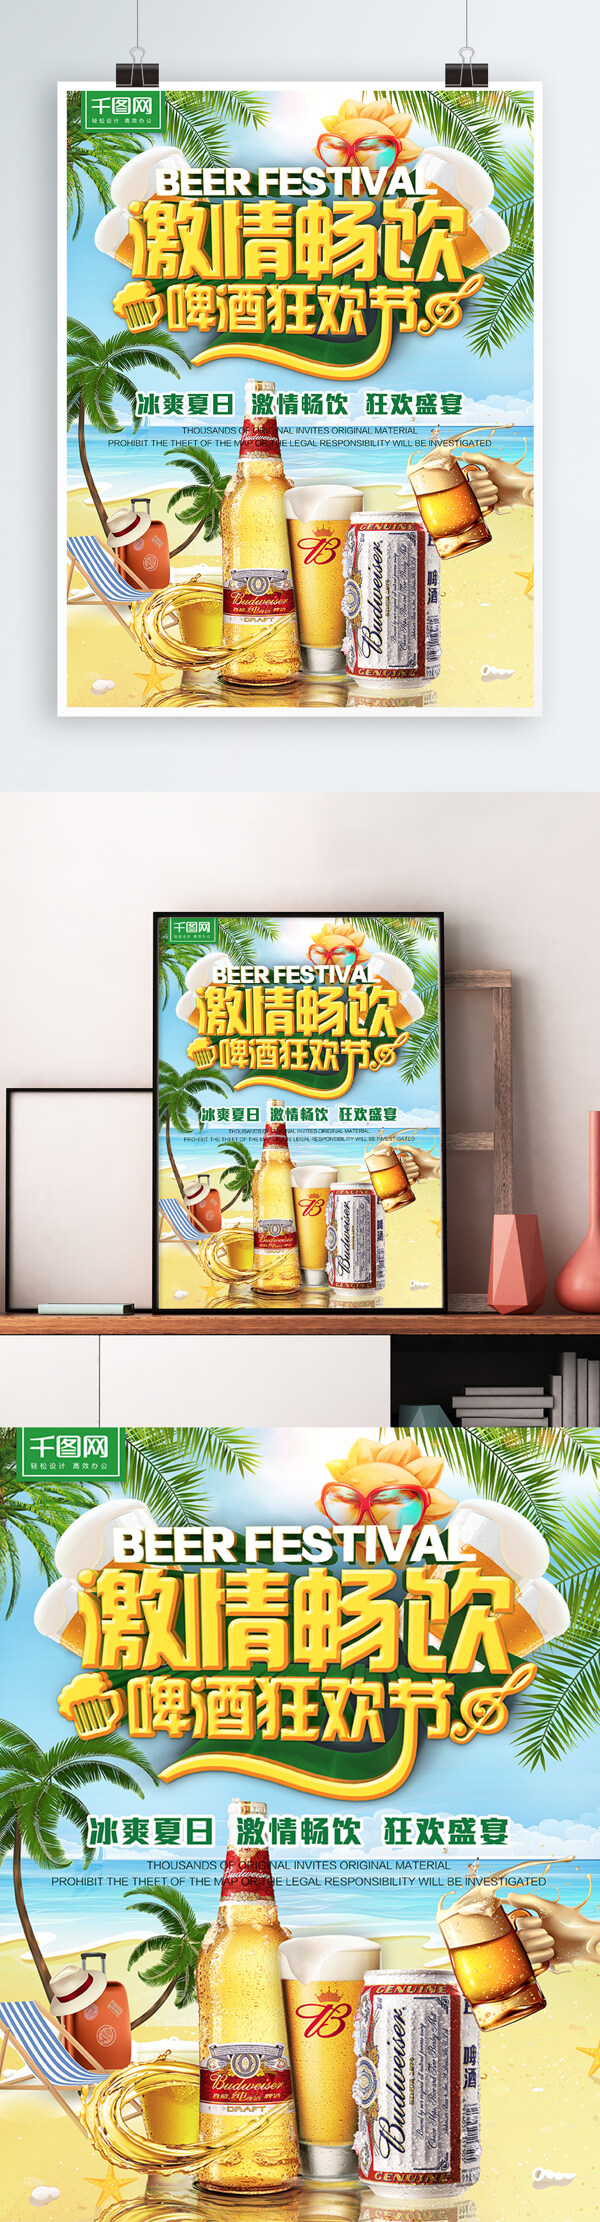 畅饮啤酒狂欢节啤酒节夏日清爽促销海报